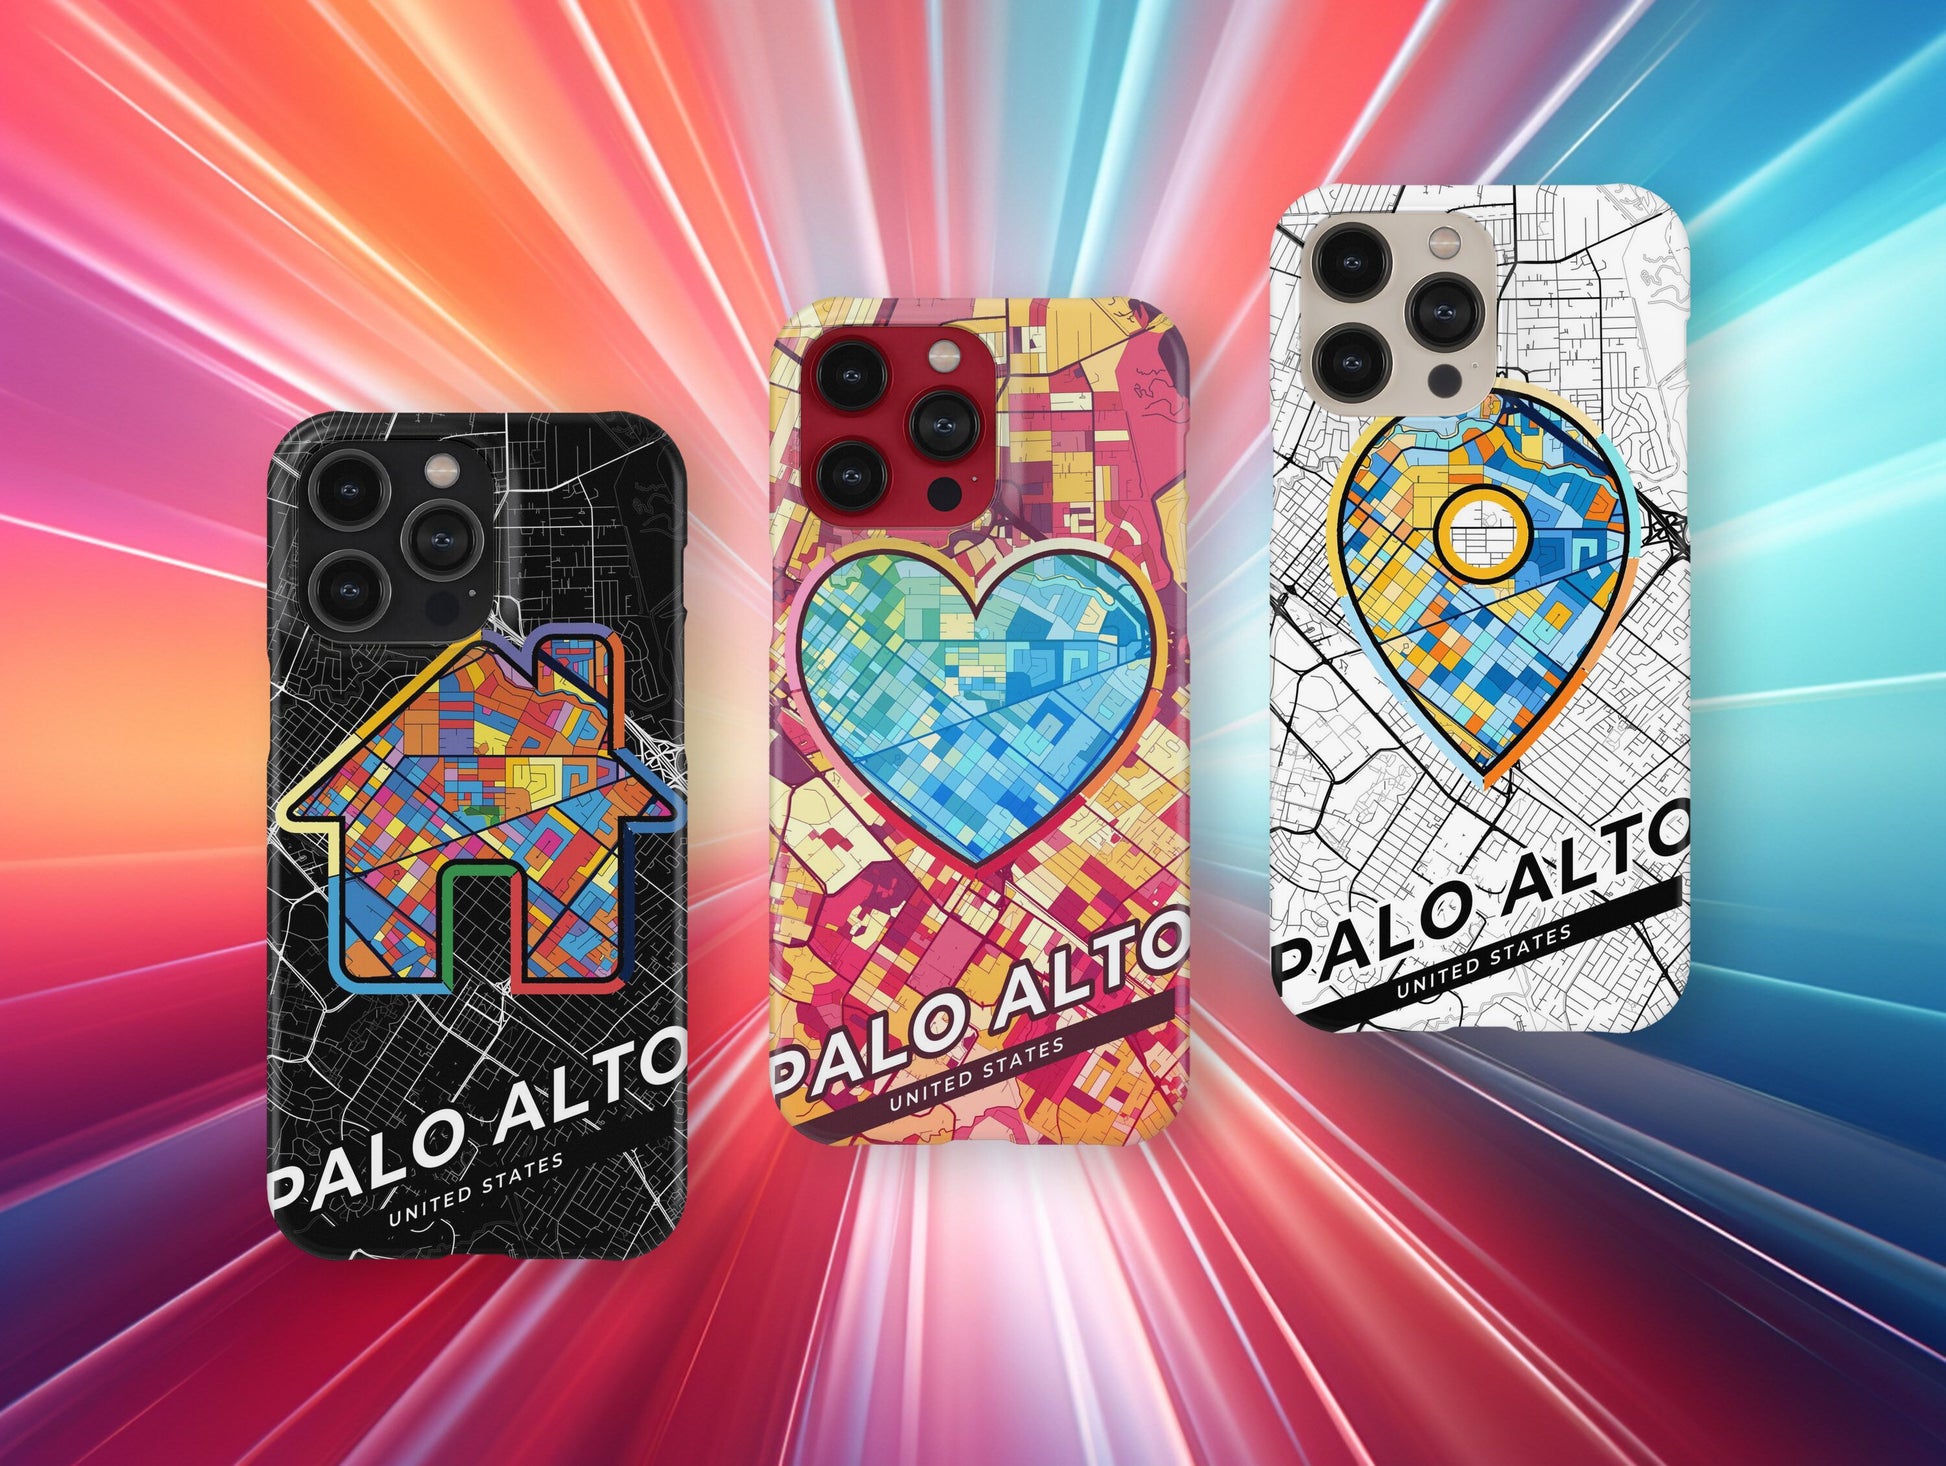 Palo Alto California slim phone case with colorful icon